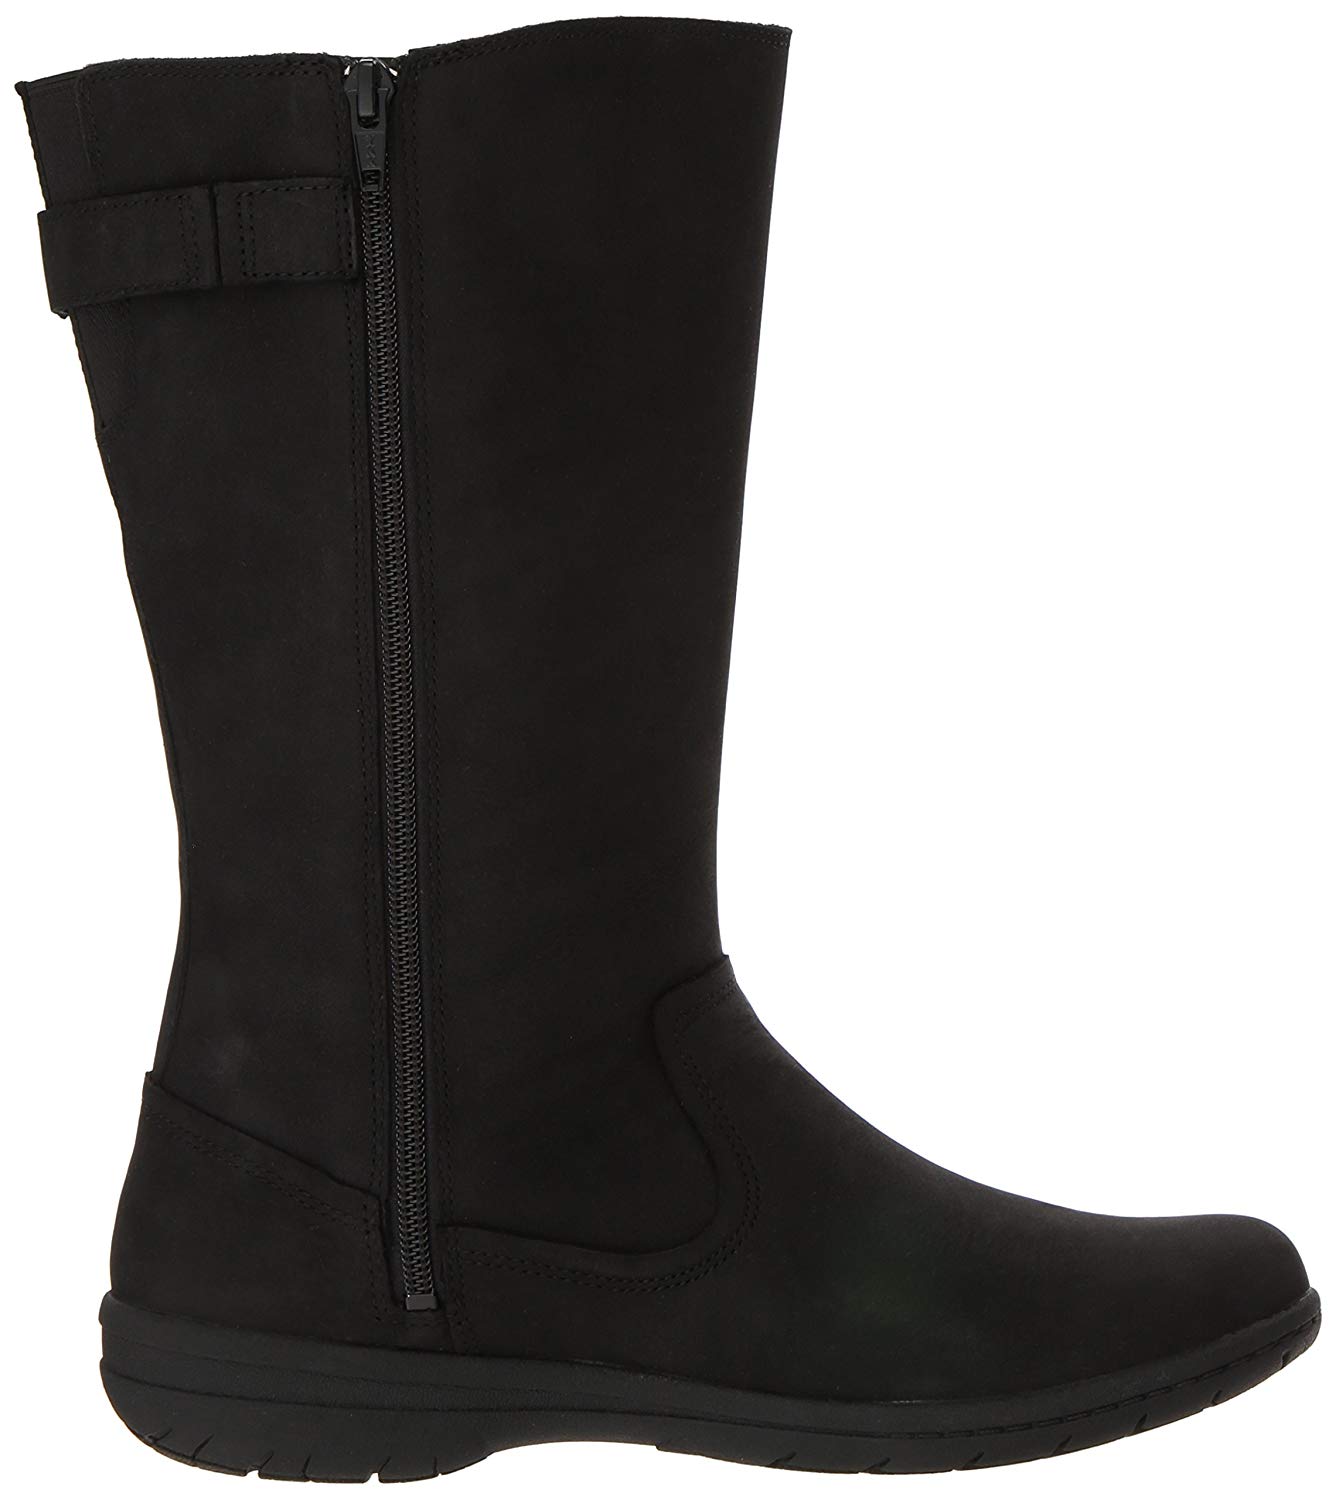 Merrell Women's Encore Kassie Tall Waterproof Fashion Boot, Black, Size ...